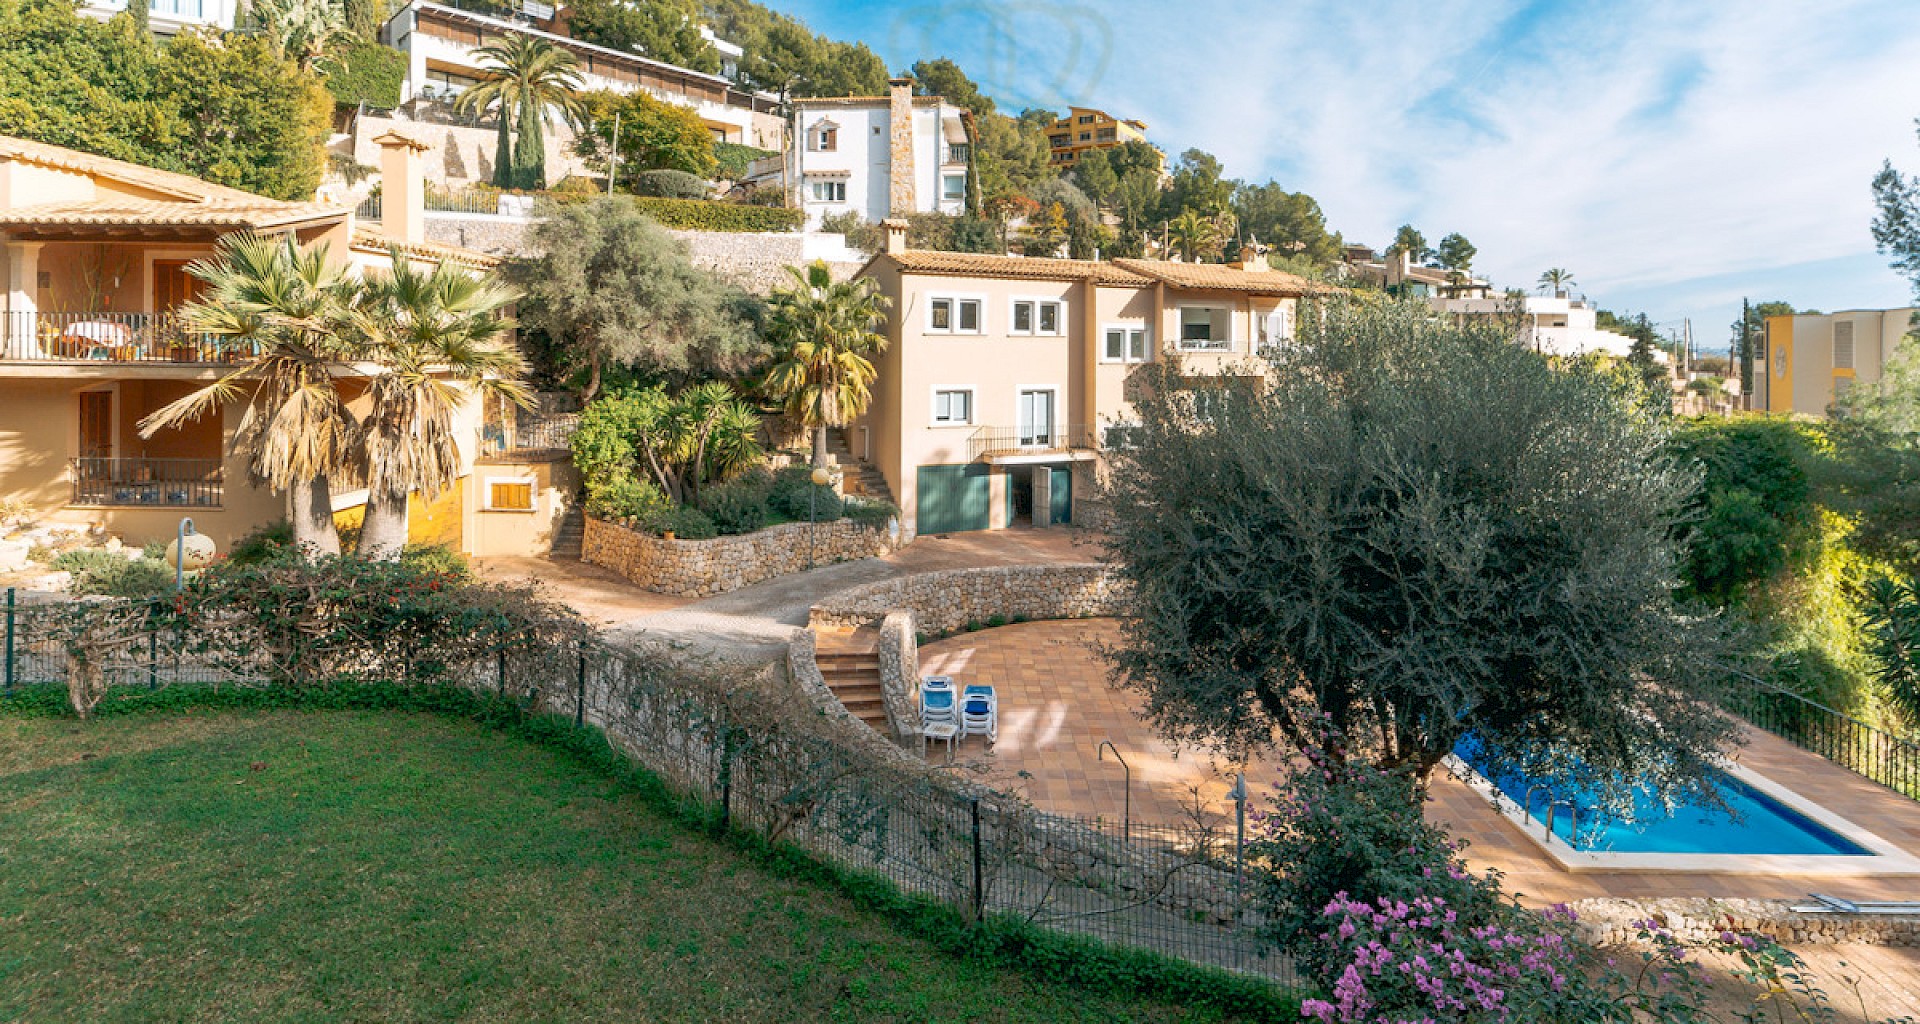 KROHN & LUEDEMANN Casa mediterránea en Génova con piscina comunitaria en un complejo privado bien cuidado Mediterranes Haus in Genova mit Gemeinschaftspool 31